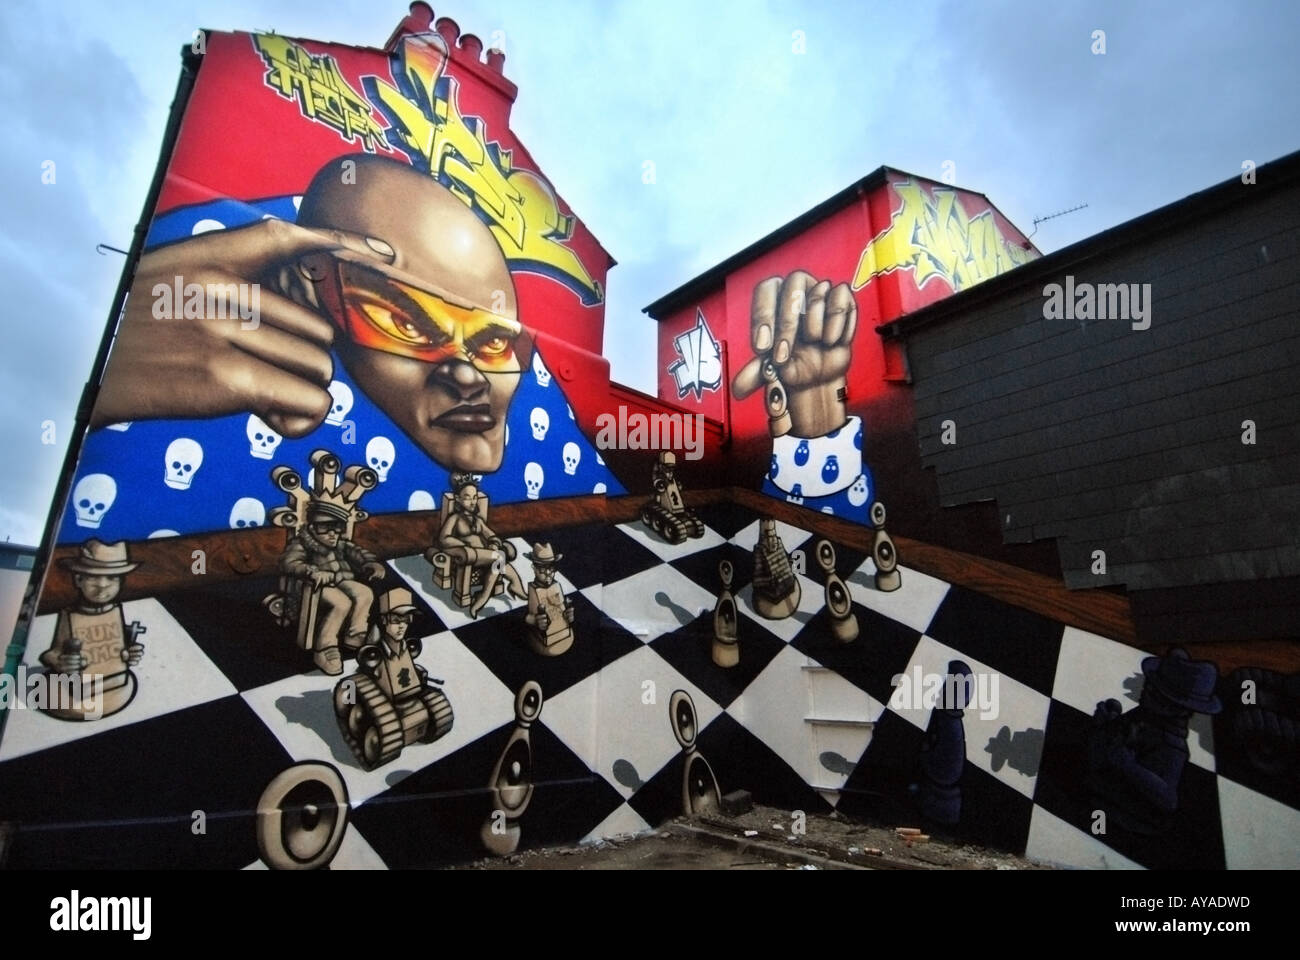 Arte graffiti urbano fresco en los extremos de la cubierta de casas adosadas en Brighton Foto de stock